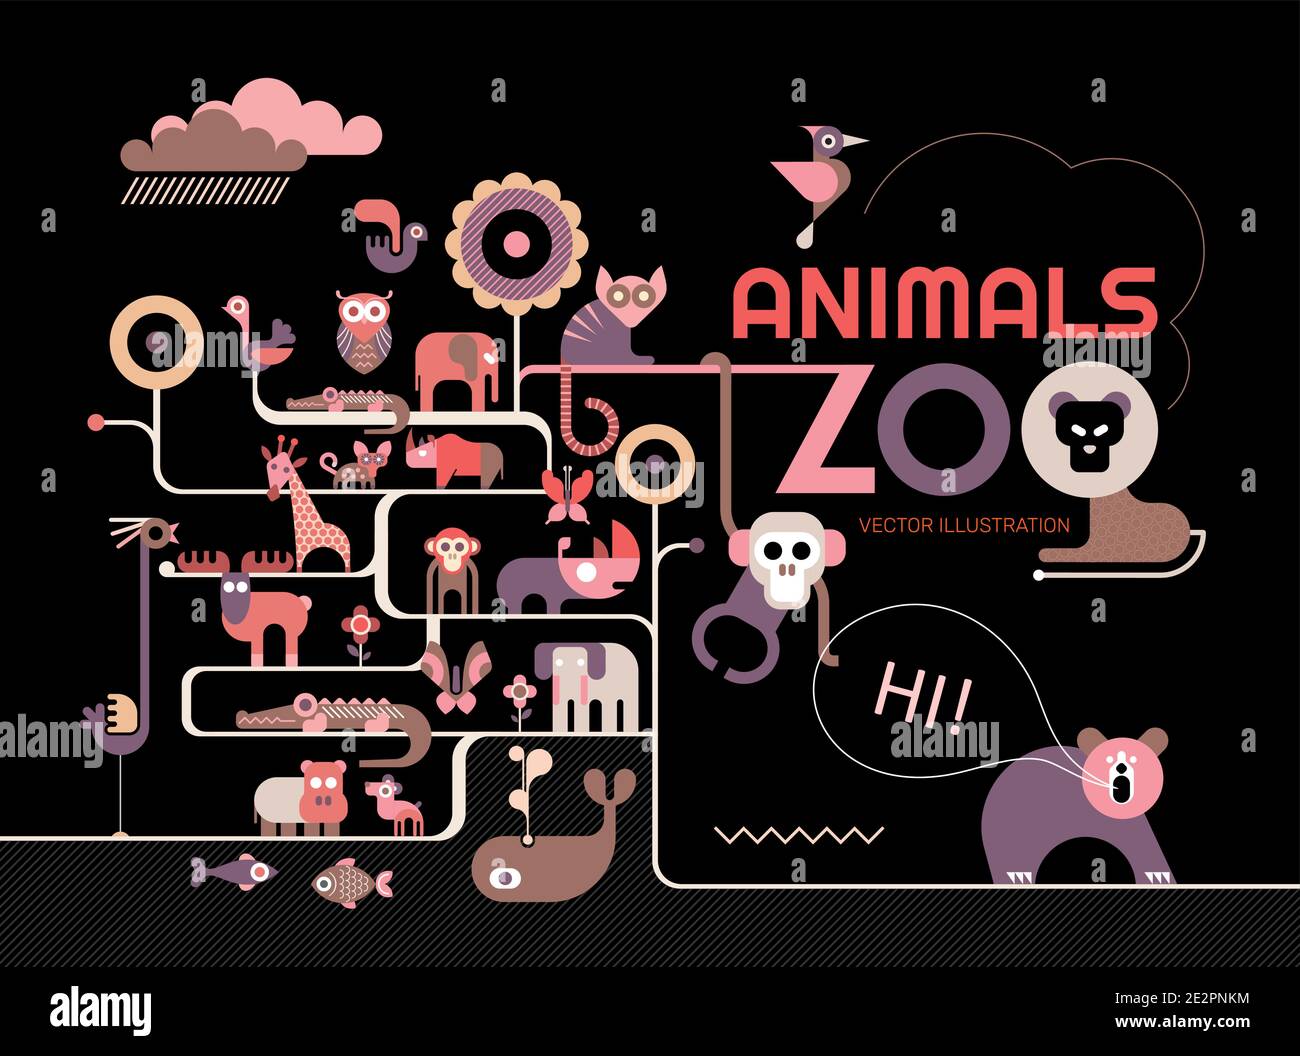 Illustration vectorielle avec de nombreuses icônes différentes d'animaux, d'oiseaux et de poissons sur fond noir. Concept des animaux de zoo. Illustration de Vecteur